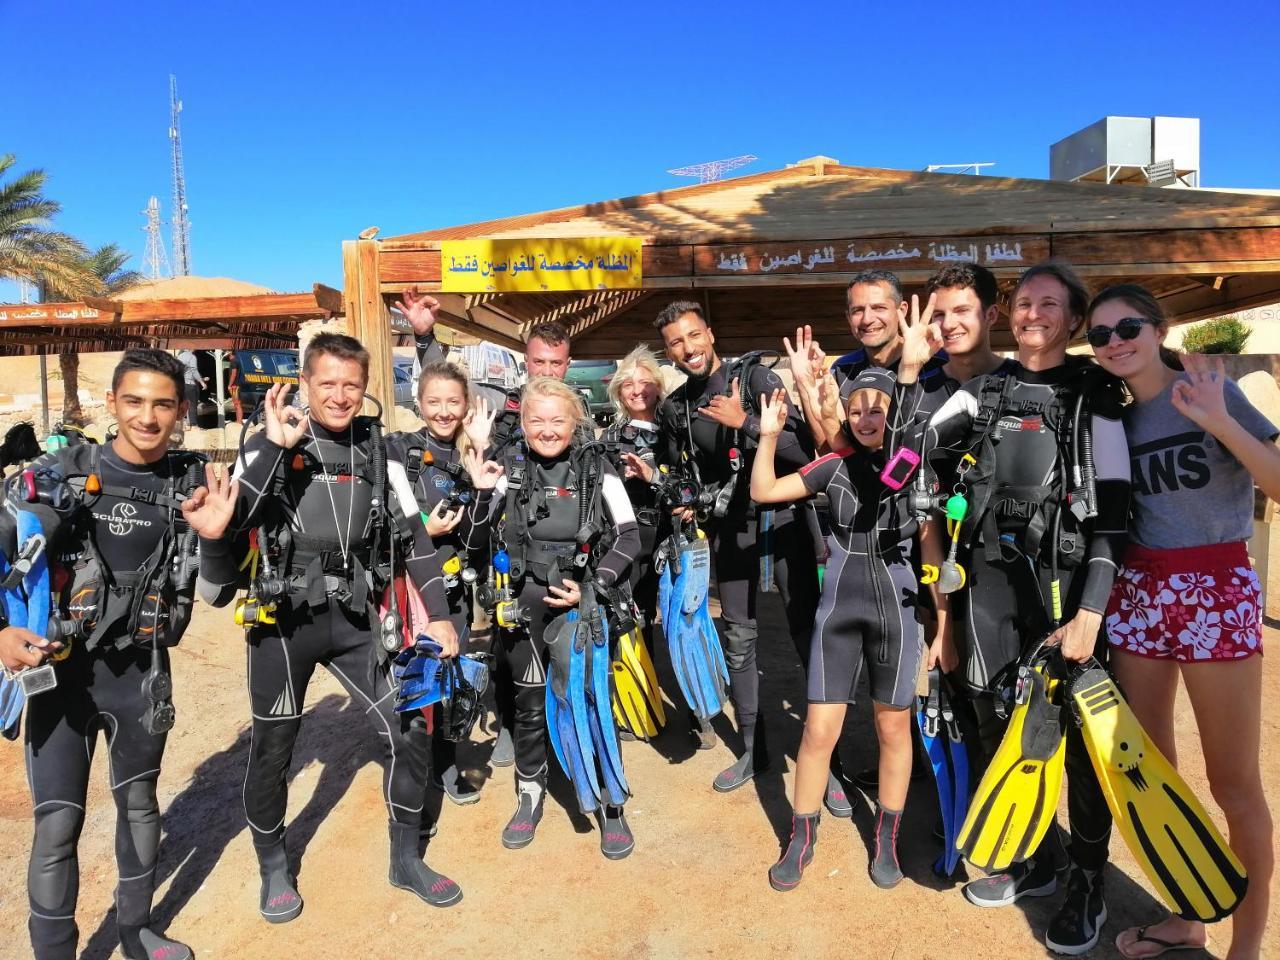 Aqaba Adventure Divers Resort & Dive Center Extérieur photo